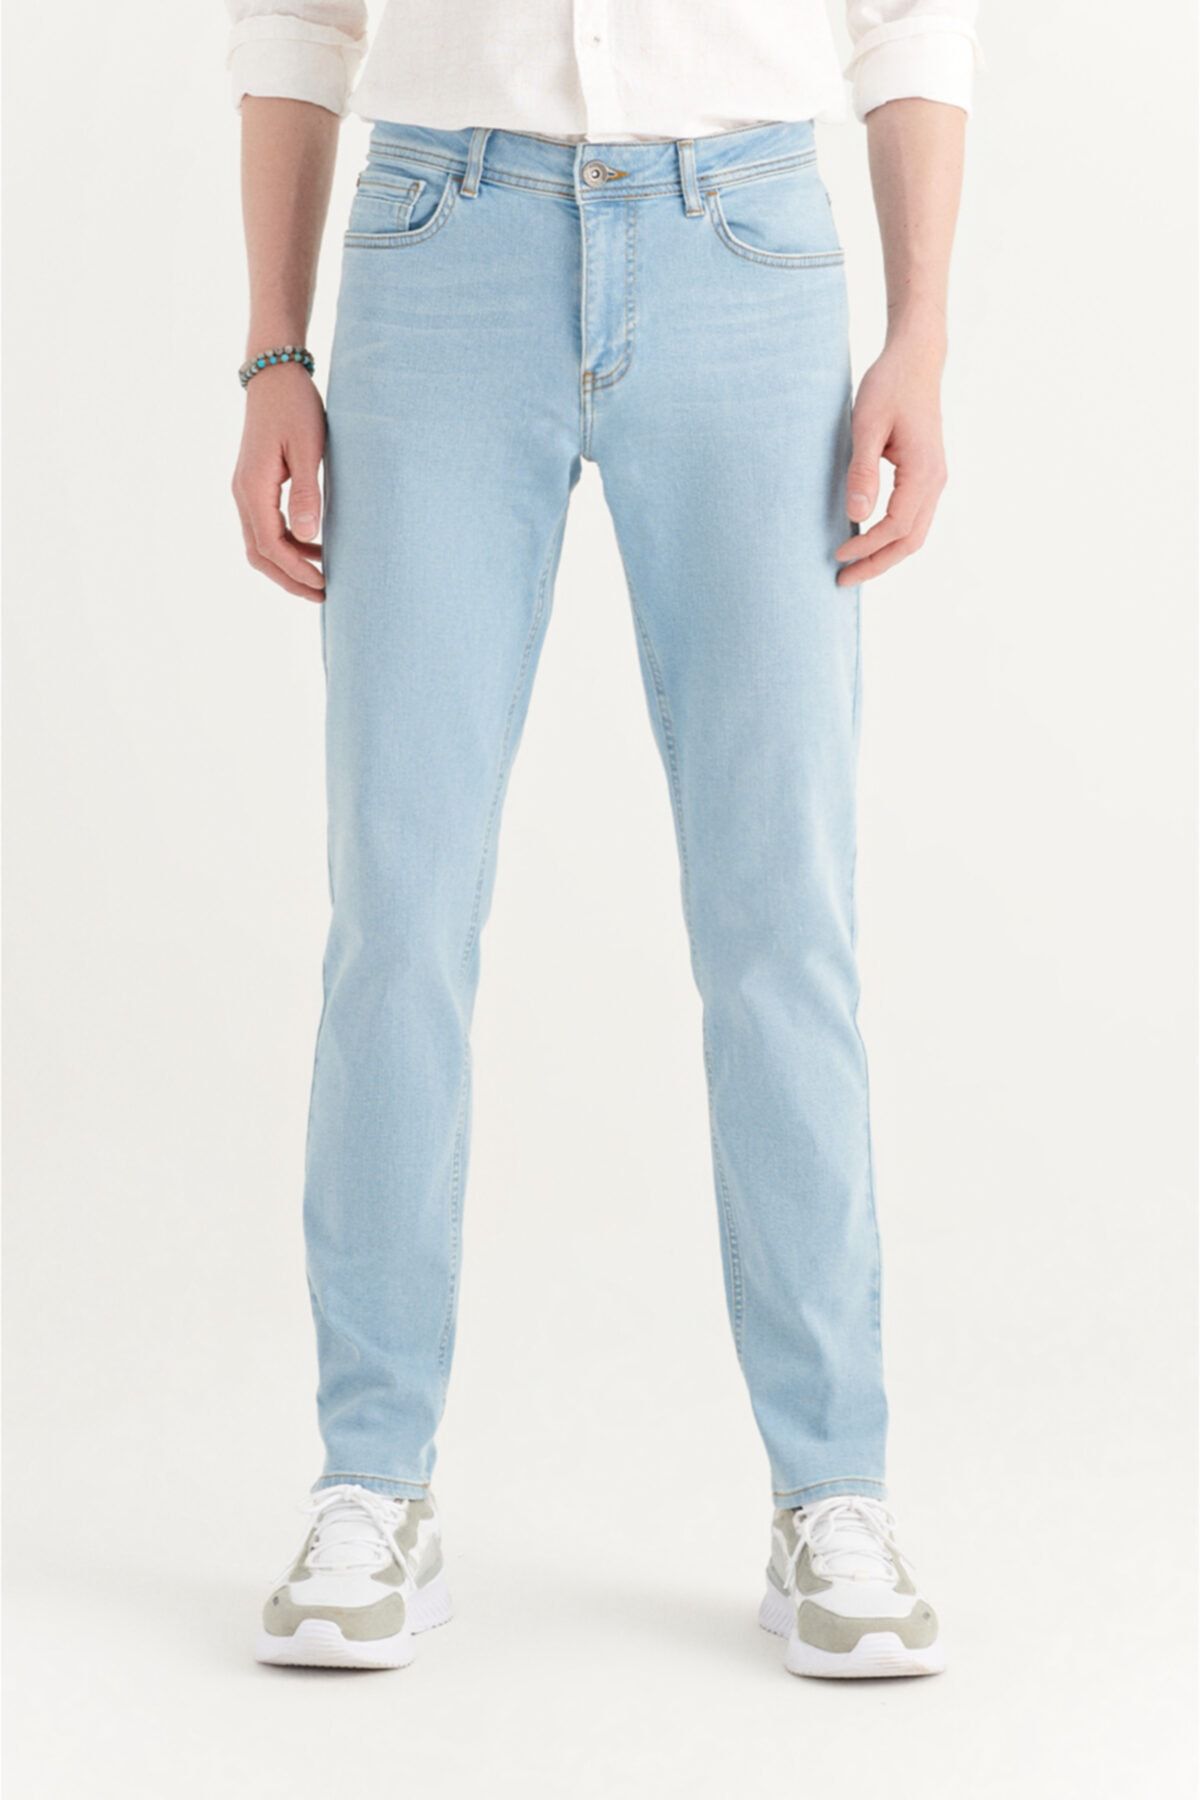 Avva Erkek Açık Mavi Slim Fit Jean Pantolon A11y3508